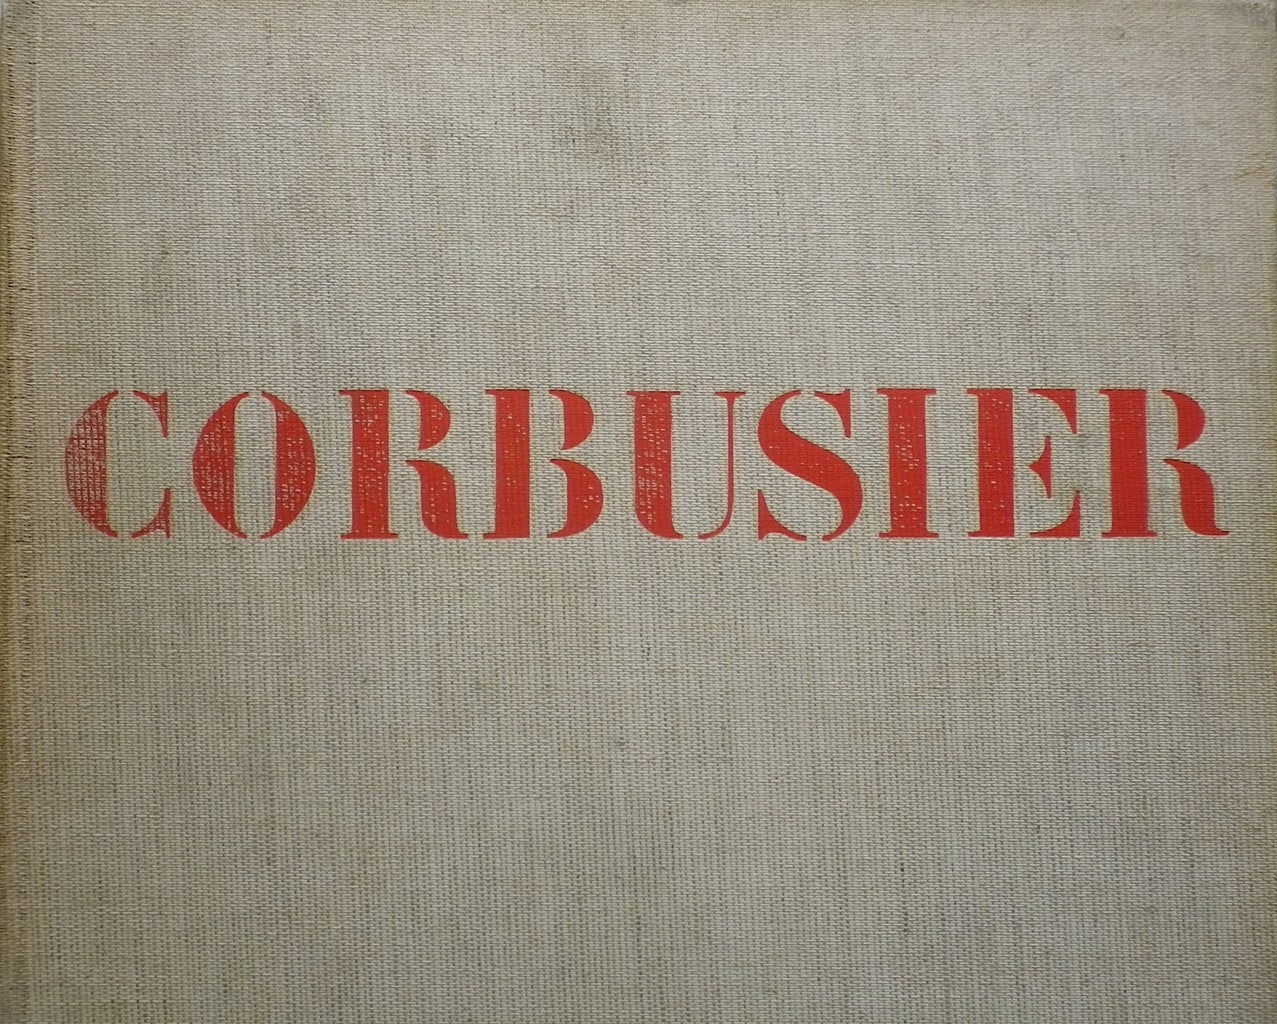 LE CORBUSIER et son atelier rue de Sevres 35 oeuvre complète 1957-1965